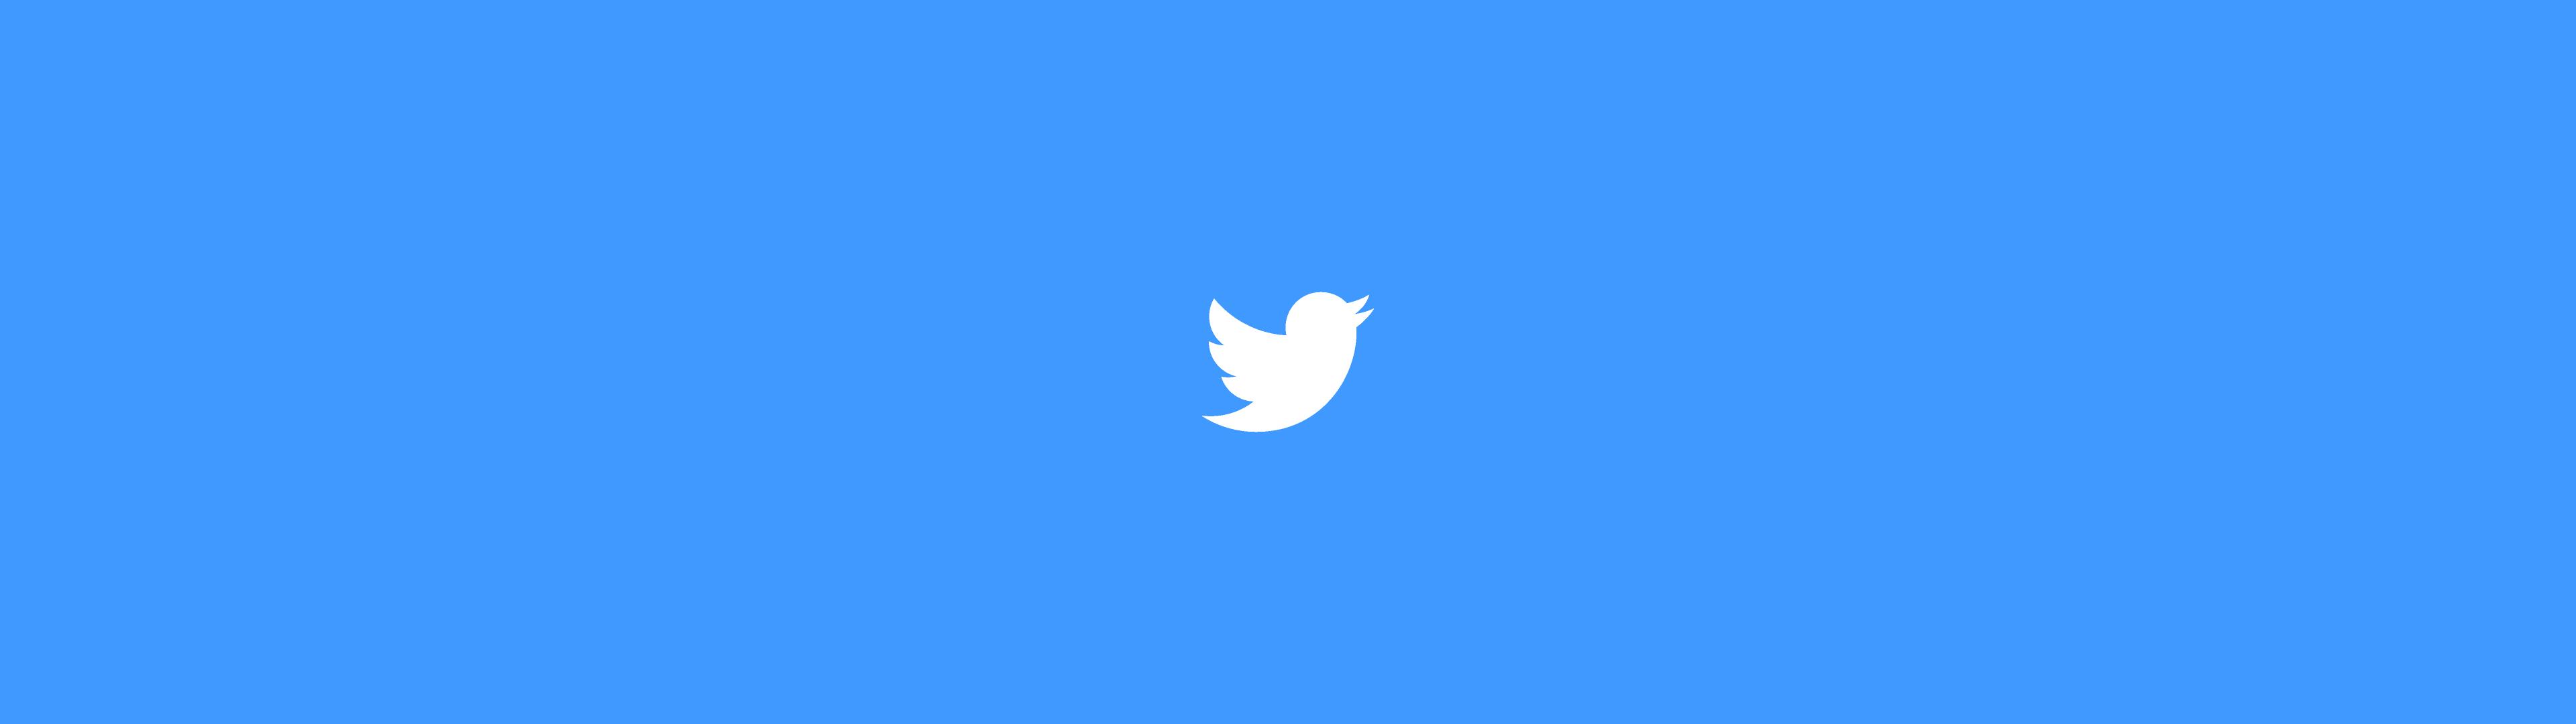 Illustration représentant le logo de Twitter